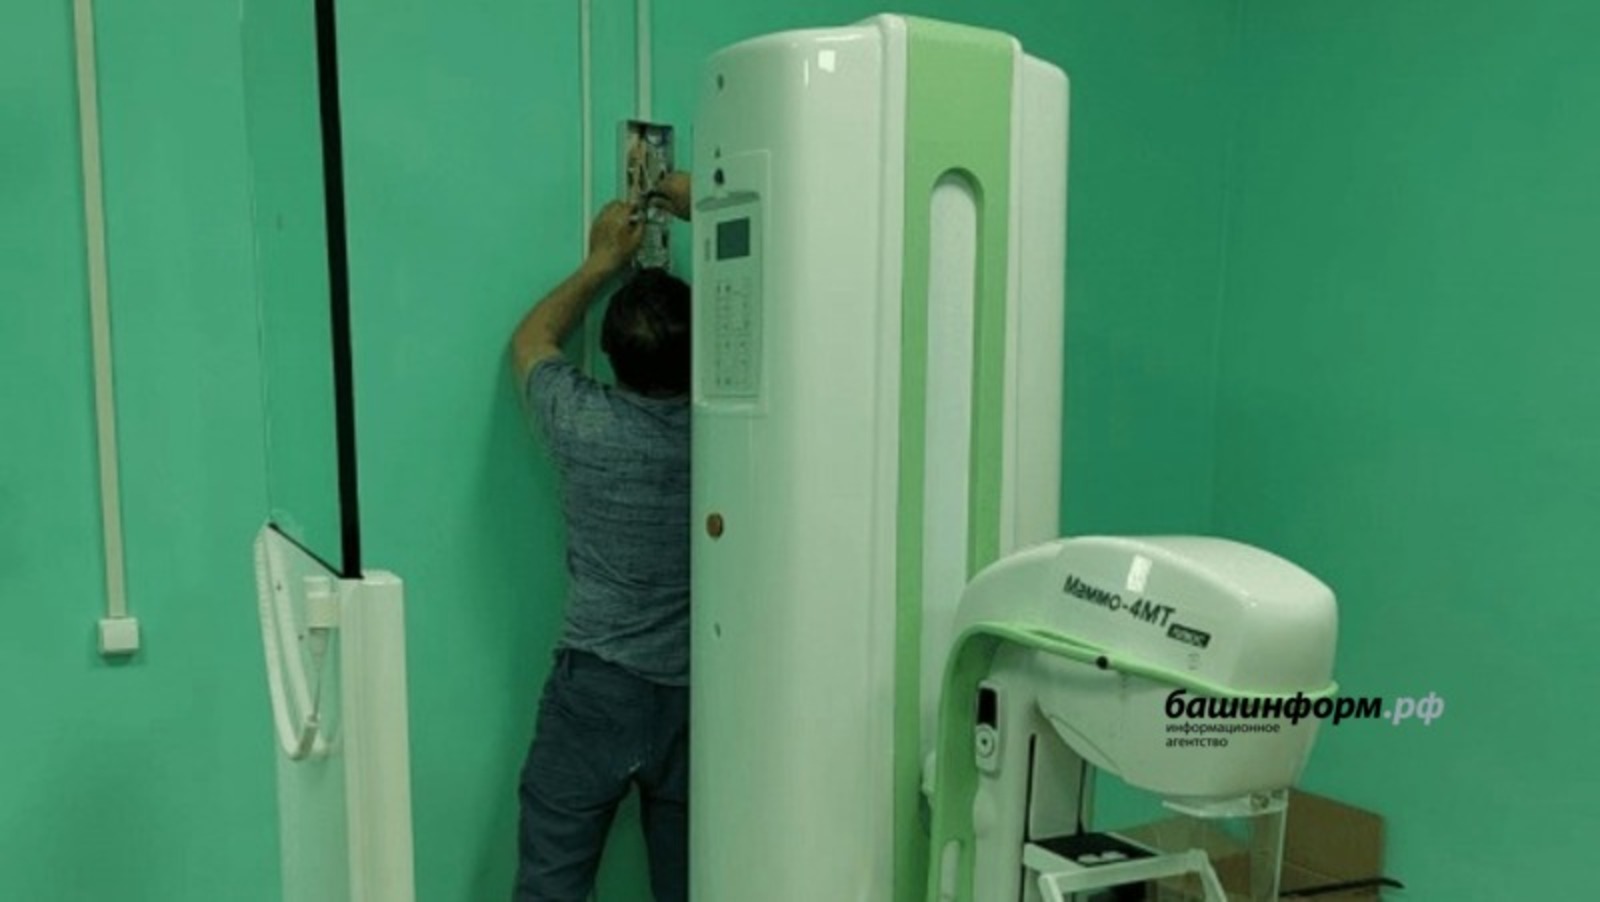 Еще одна больница Башкирии получила современное оборудование благодаря нацпроекту